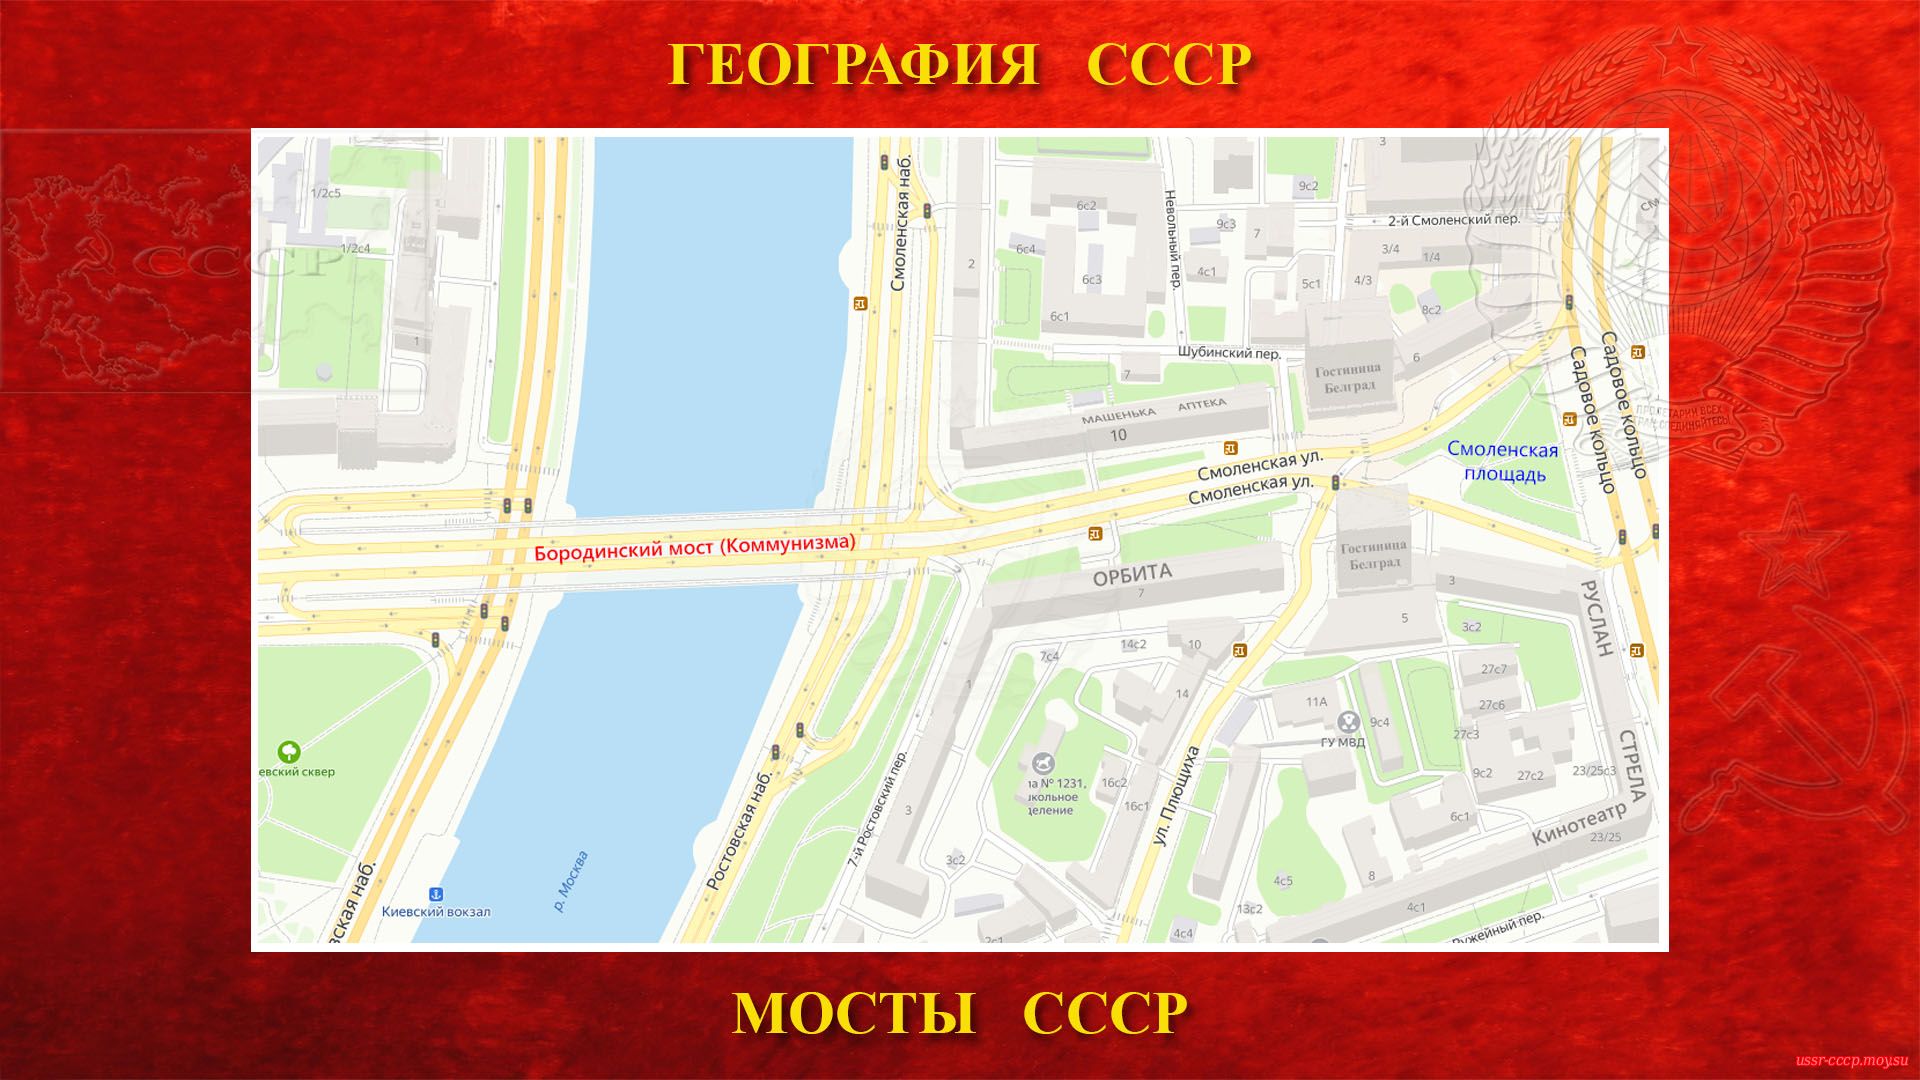 Бородинский (Коммунизма) — Мост в центре Москвы (повествование)